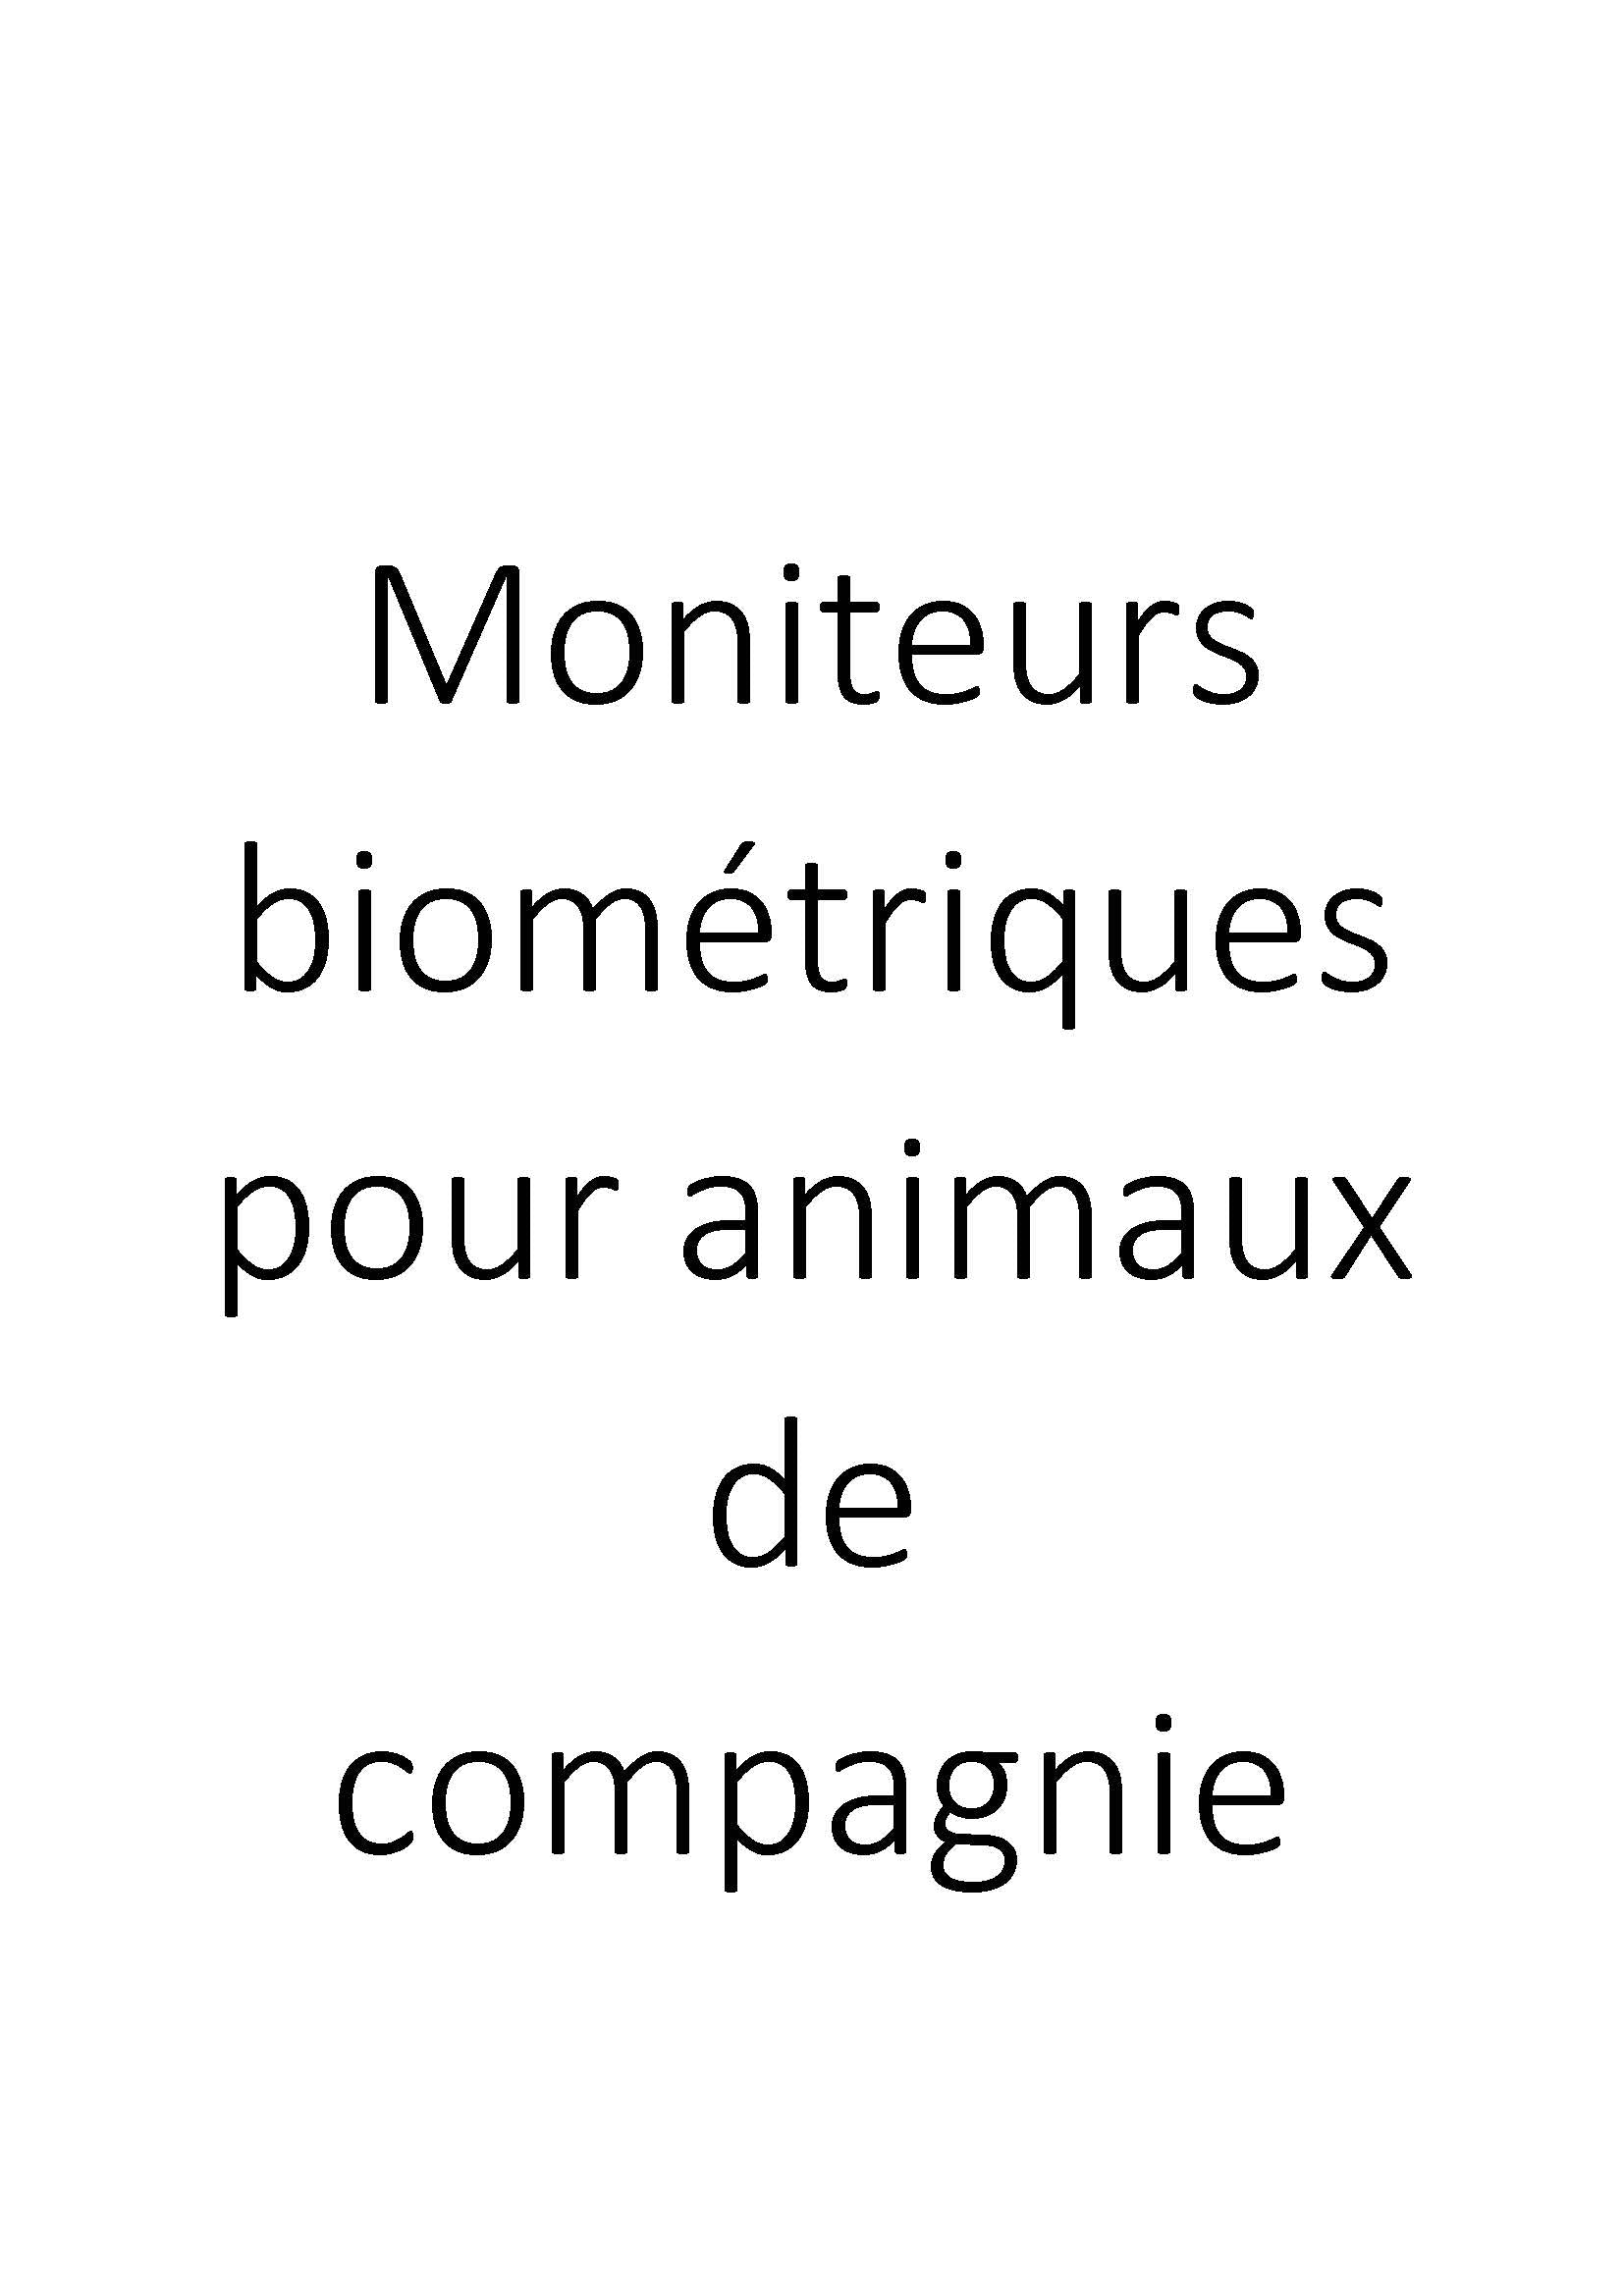 Moniteurs biométriques pour animaux de compagnie clicktofournisseur.com